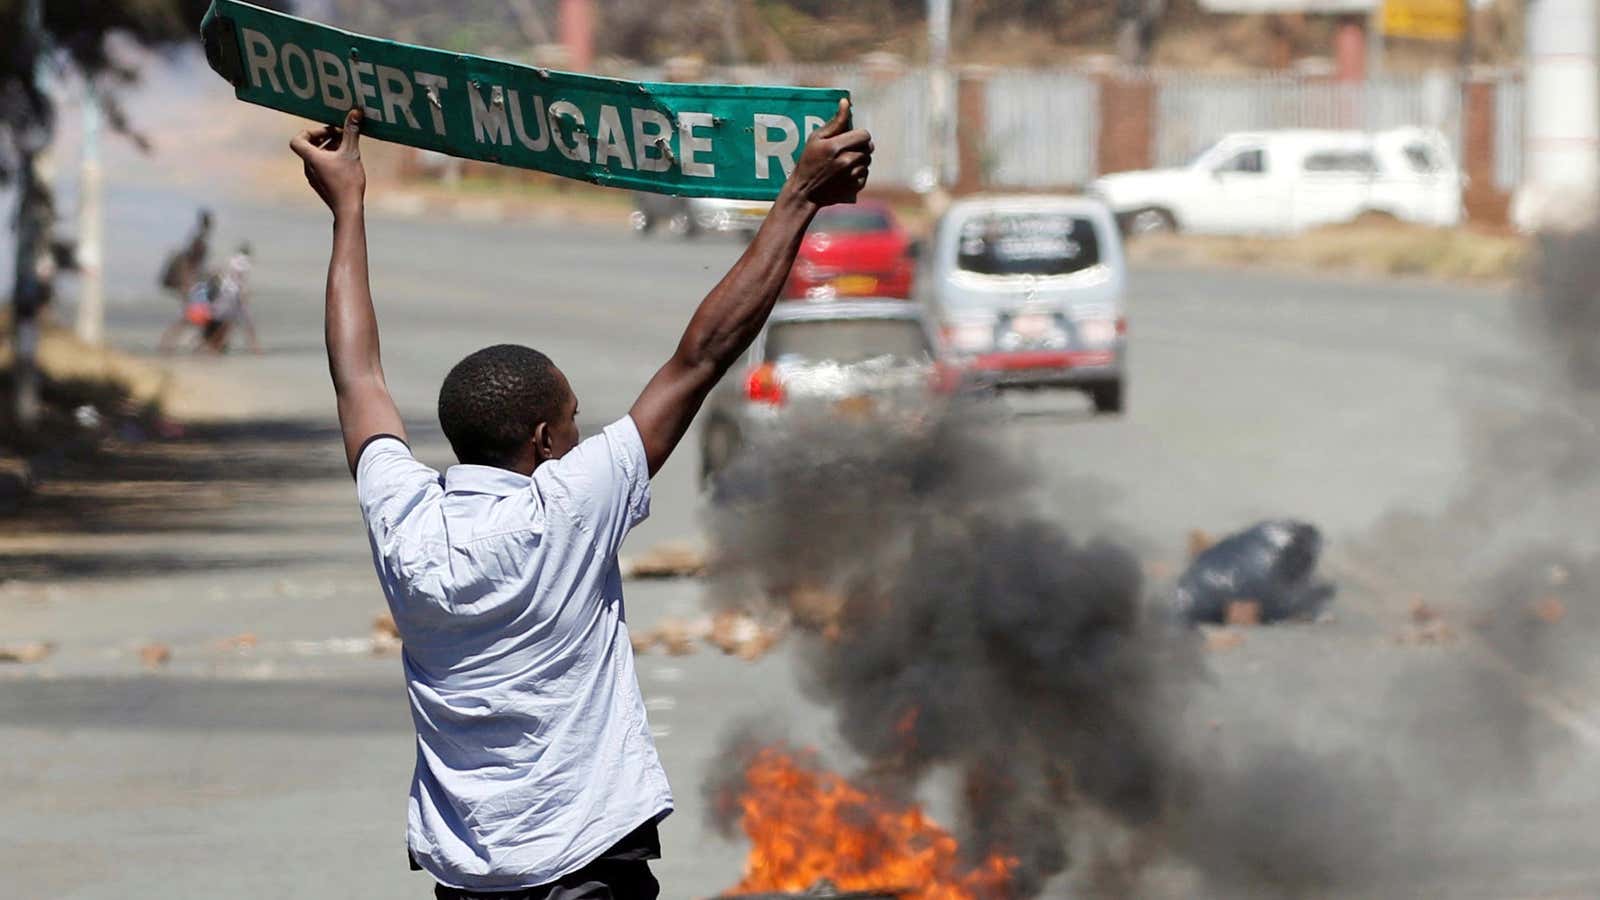 Protesters want Mugabe gone.